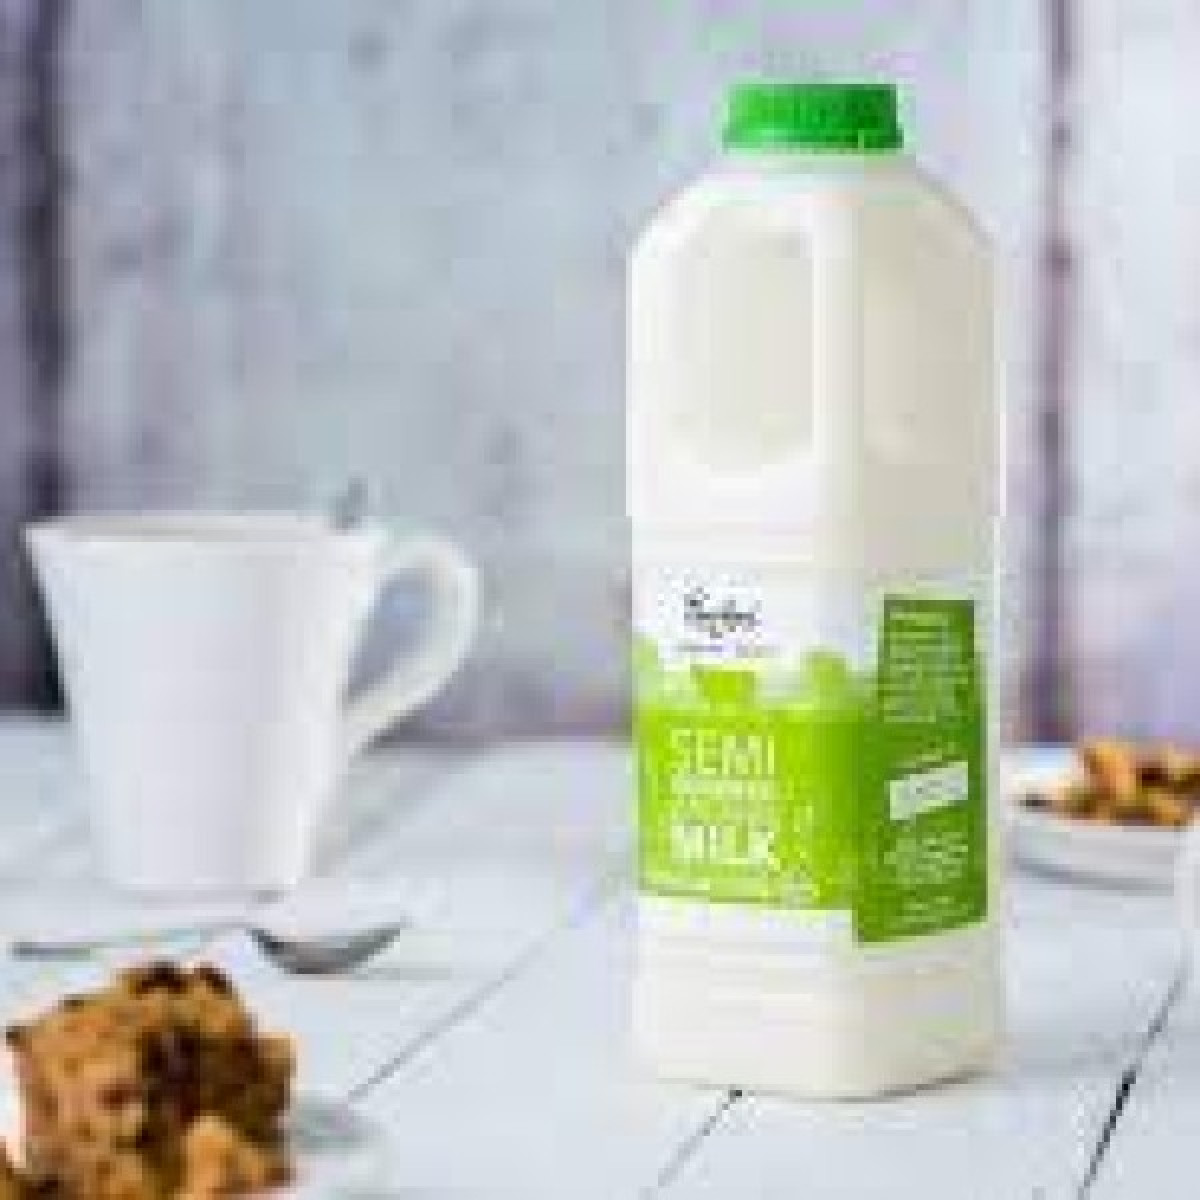 Product picture for Organic 1 Litre Semi Skim Milk